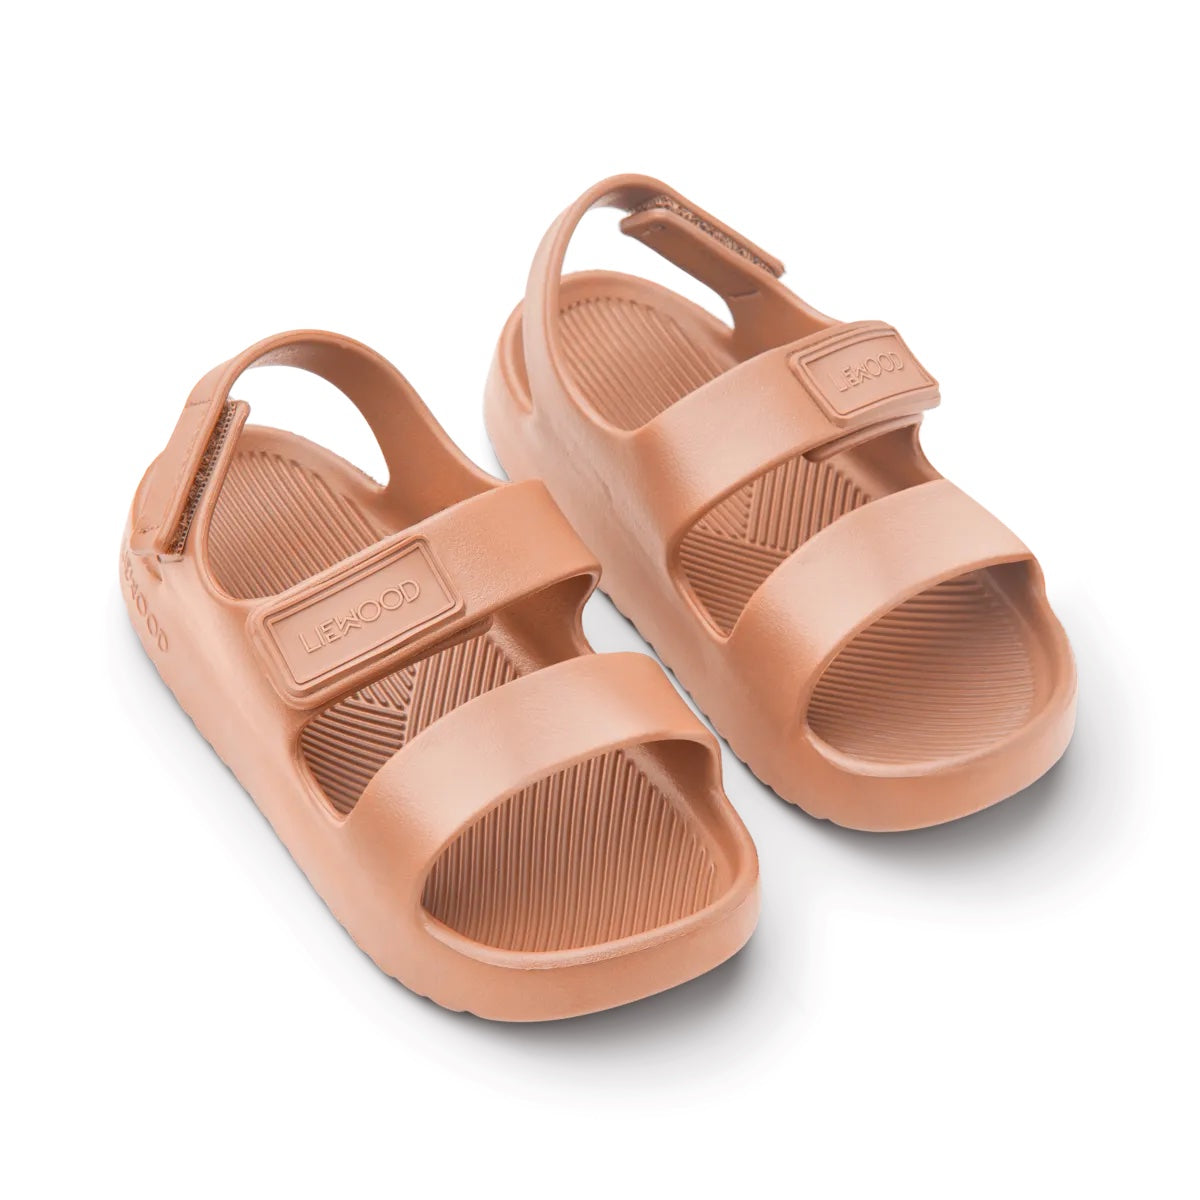 De Liewood dean sandalen tuscany rose zijn hele fijne sandalen voor je kleintje voor tijdens de warme zomerdagen. Deze sandalen lopen heerlijk want ze zijn licht van gewicht en flexibel. Ook fijn te gebruiken als waterschoenen. VanZus.